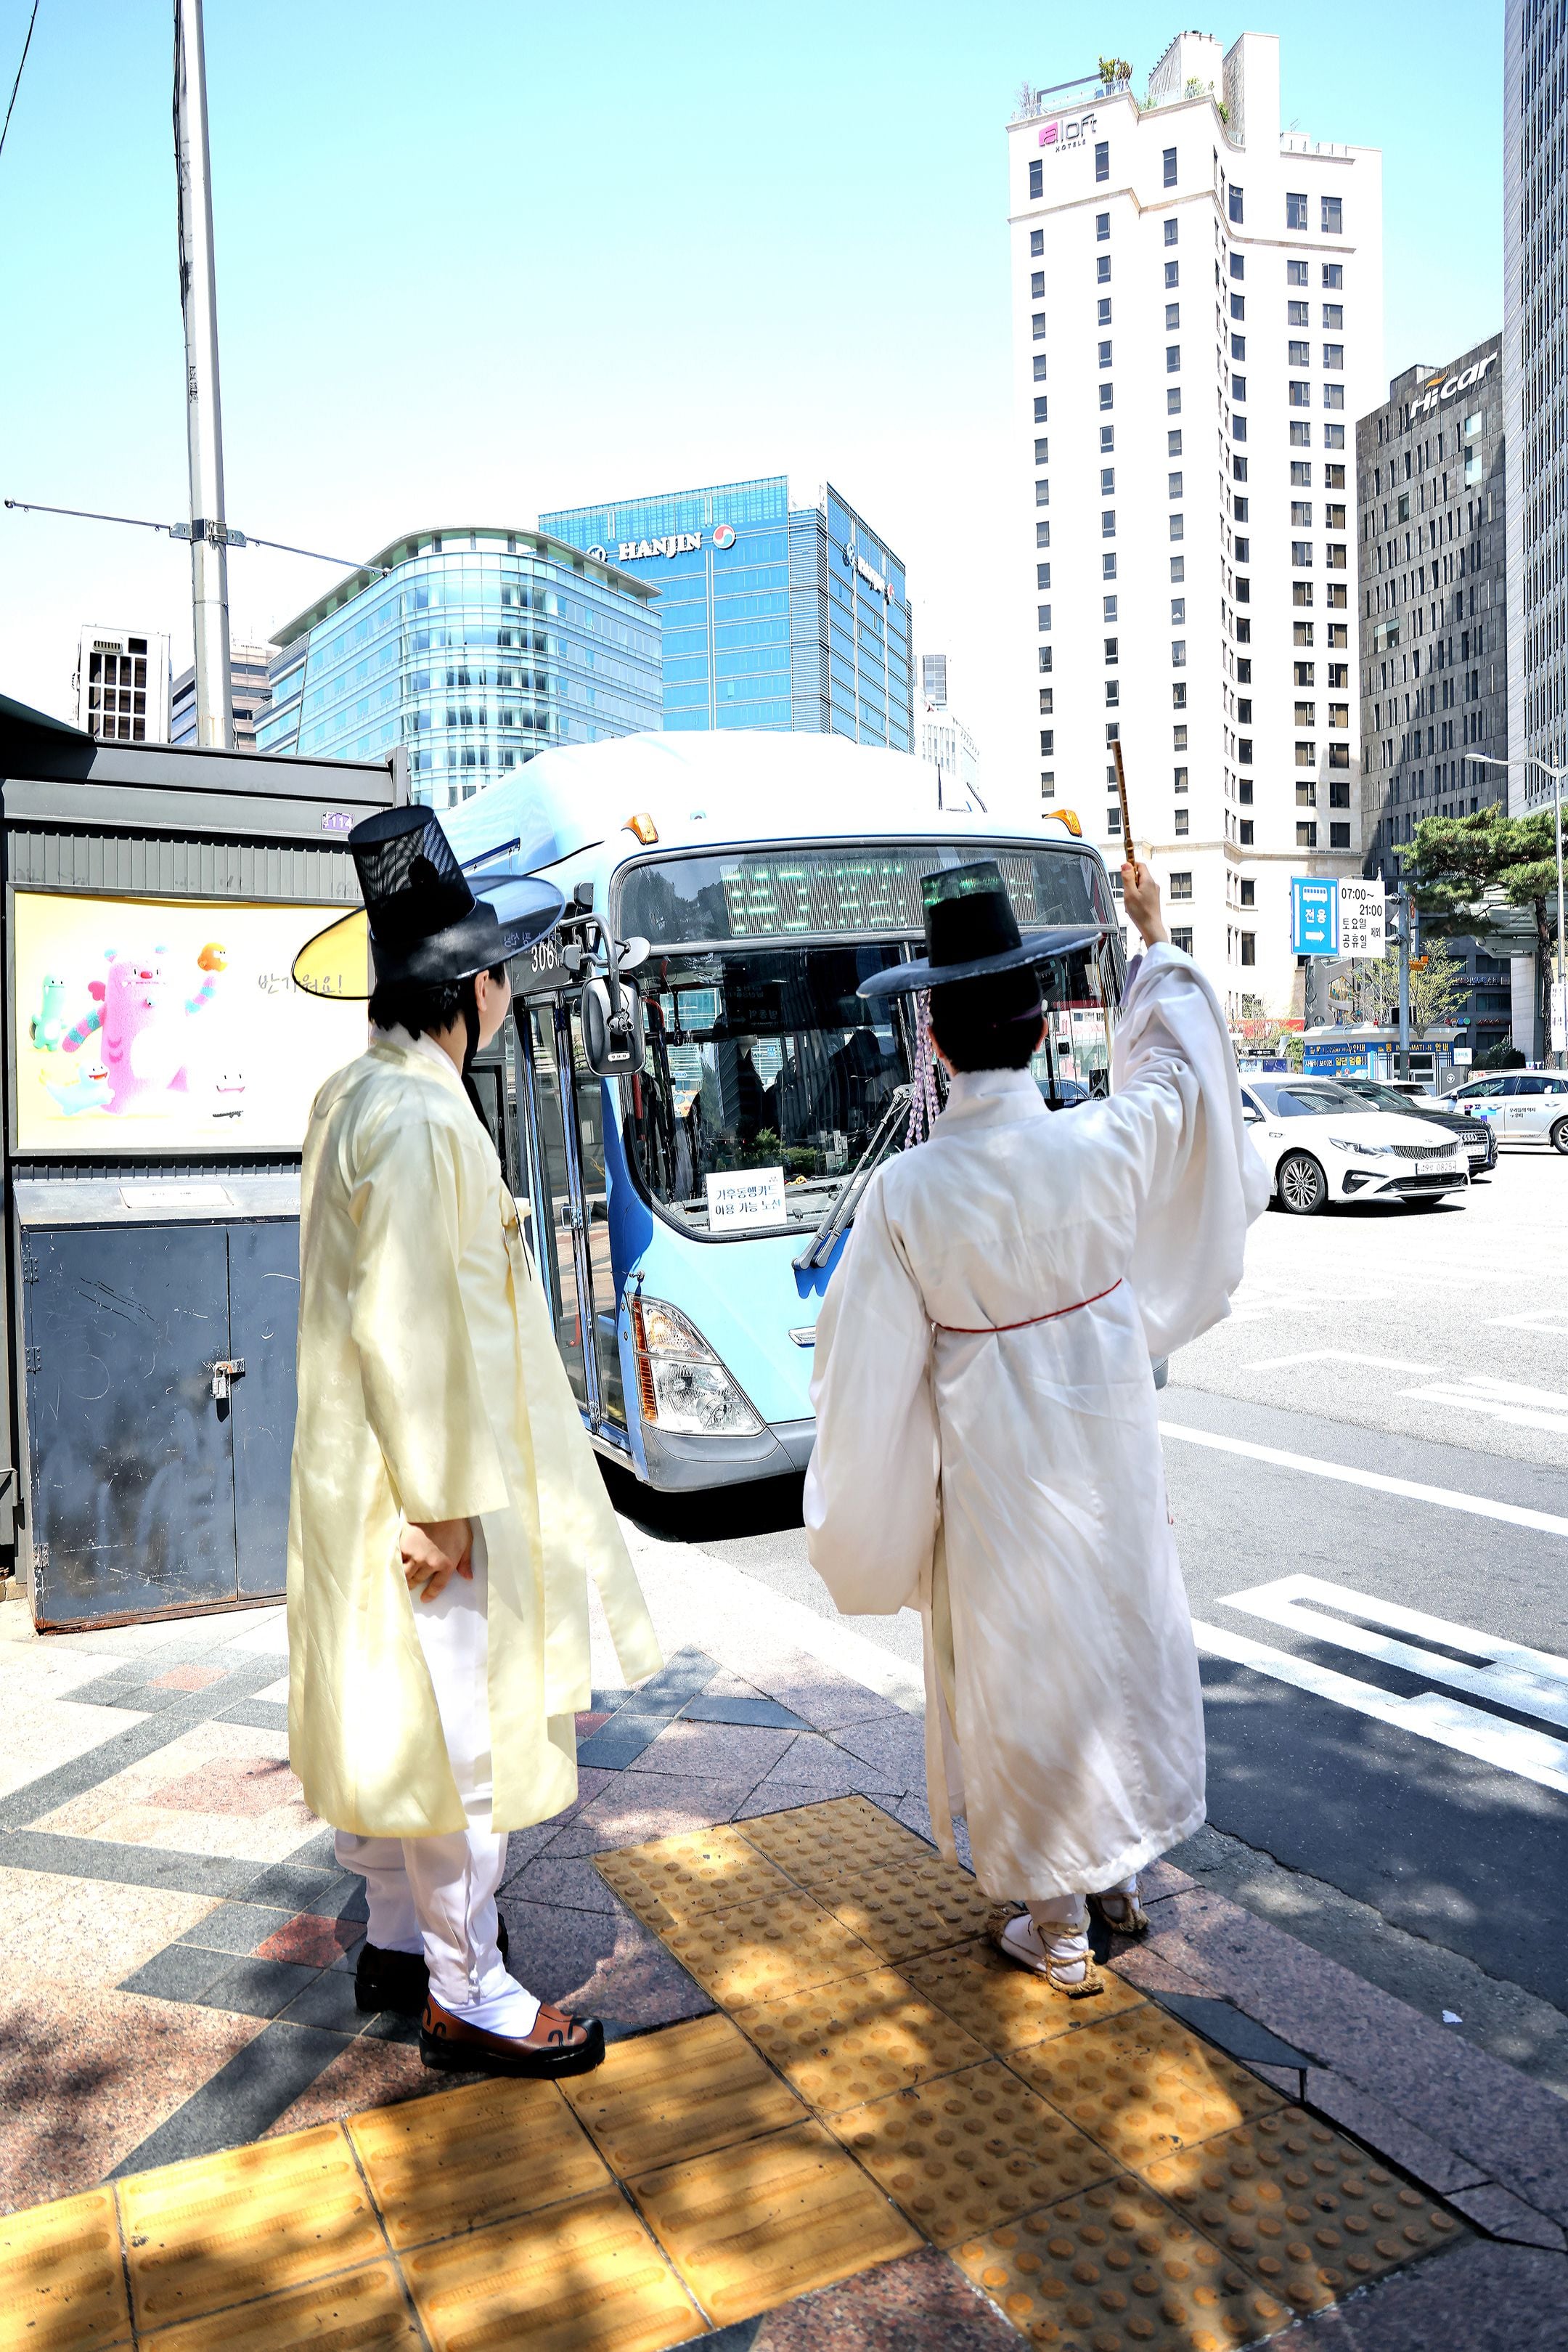 지난 13일 서울 중구의 한 버스 정류장에서 송민근오른쪽씨가 손에 쥐고 있던 전통 부채를 들어 올려서 버스 탑승 의사를 표현하고 있다. /주민욱 영상미디어 기자